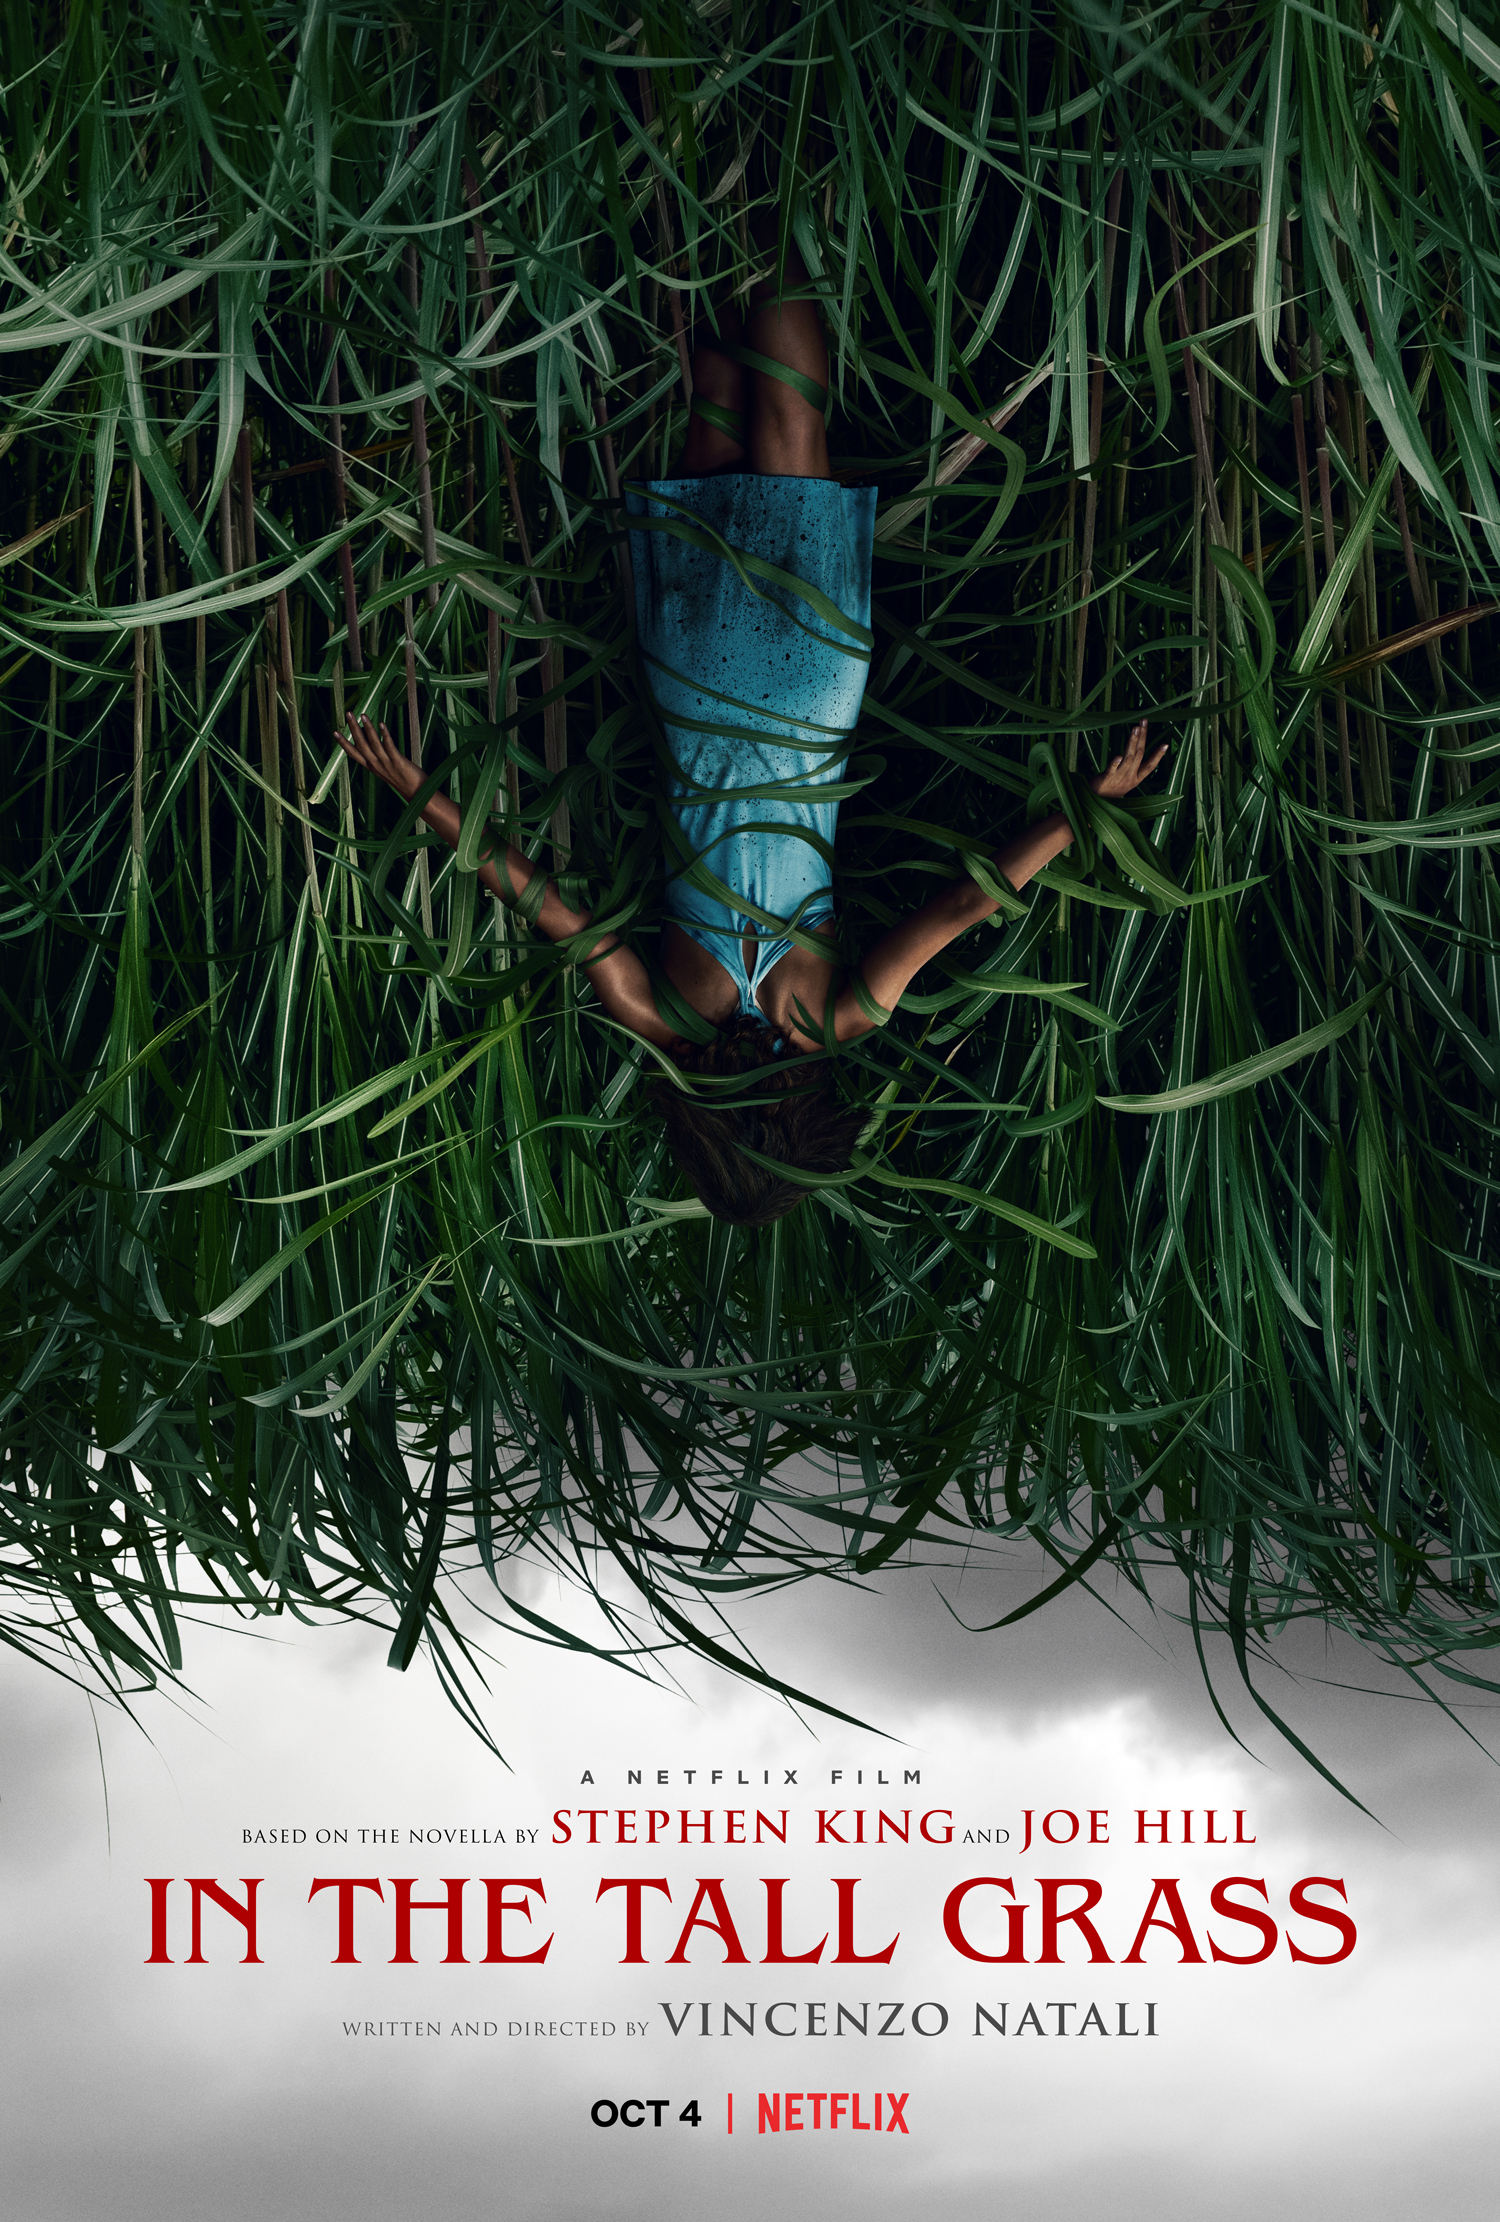 Nonton film In the Tall Grass layarkaca21 indoxx1 ganool online streaming terbaru